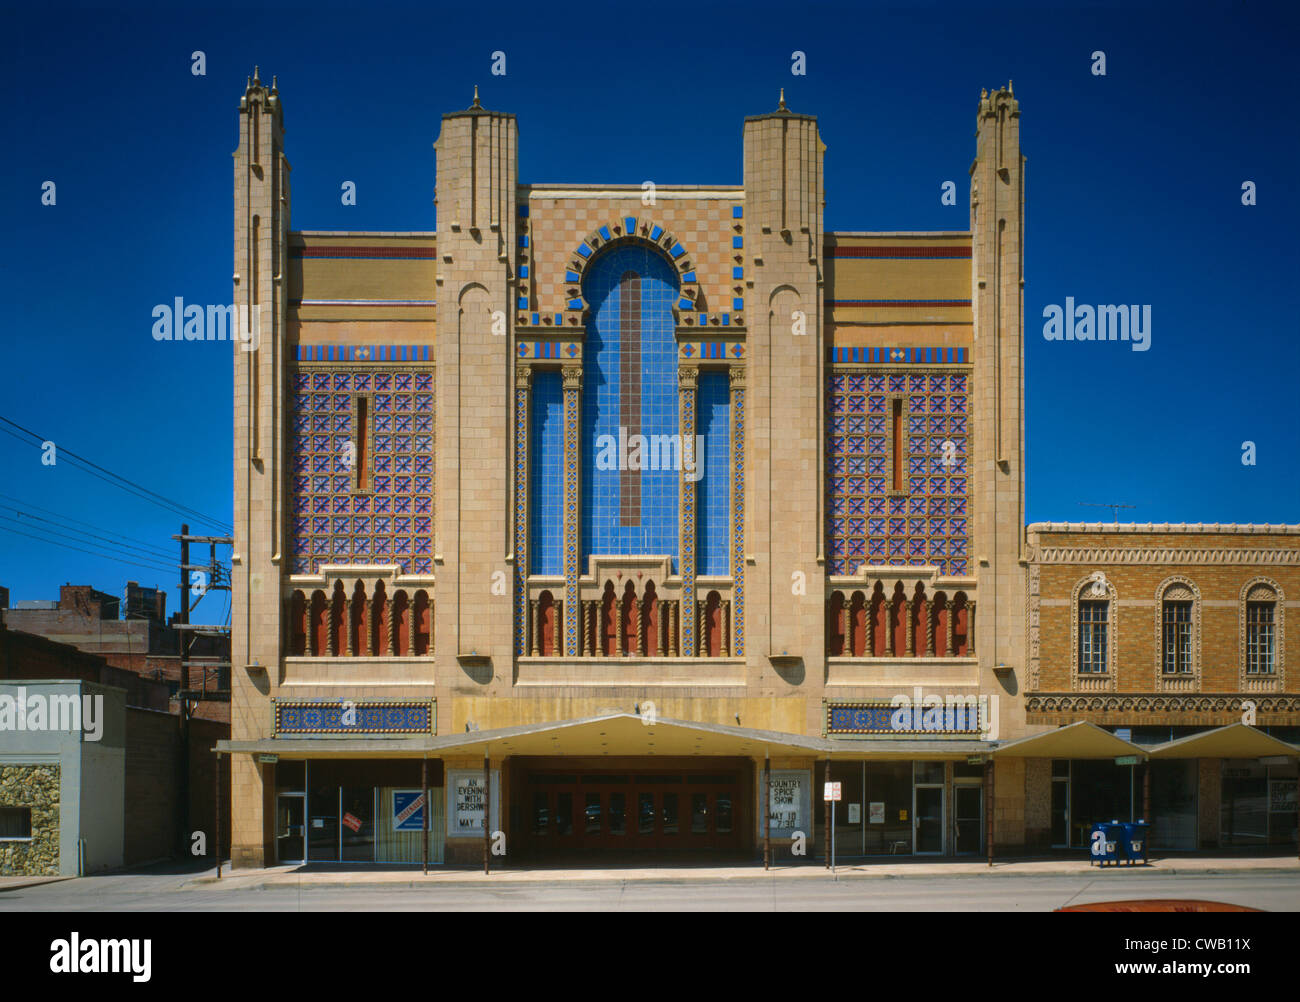 Kinos, Missouri Theatergebäude, erbaut im Jahre 1927, 713-715 Edmond Street, Saint Joseph, Missouri, ca. 1970er Jahre. Stockfoto